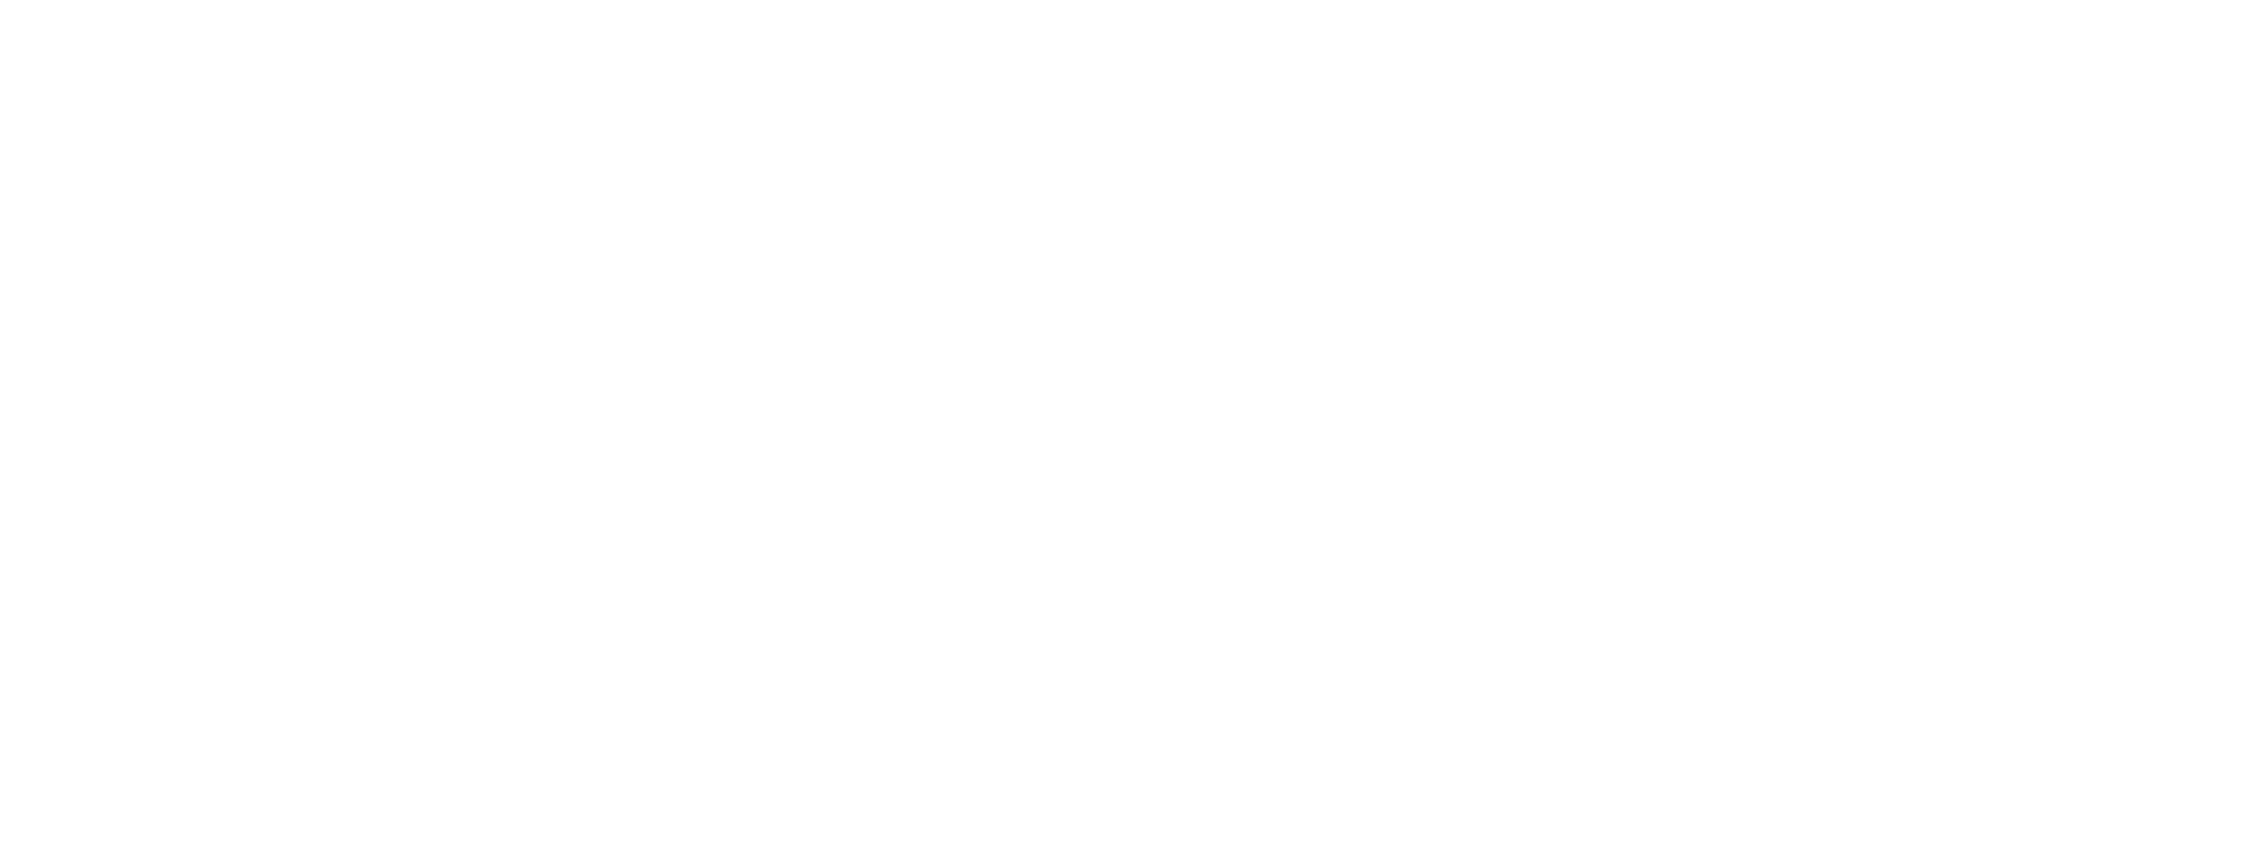 SANTUÁRIO DE NOSSA SENHORA DA PAZ